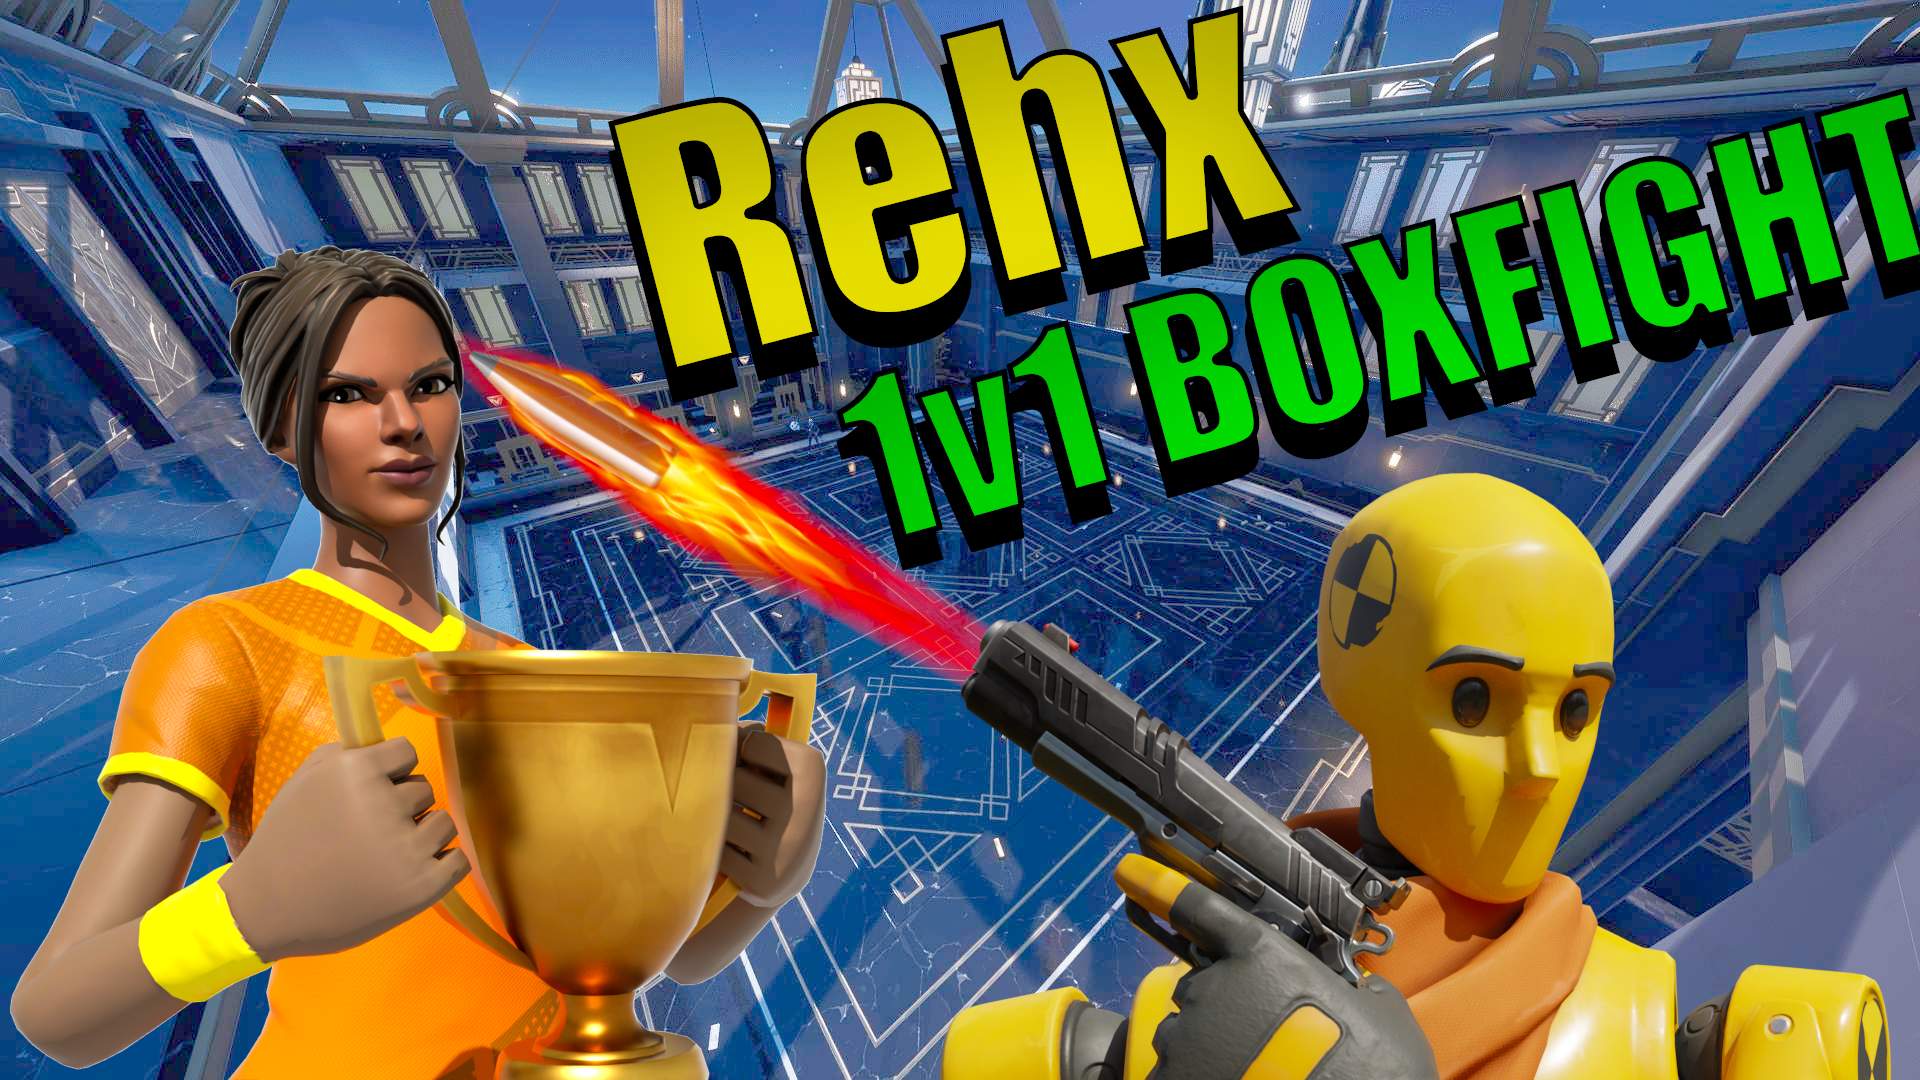 REHX BOXFIGHT 1V1